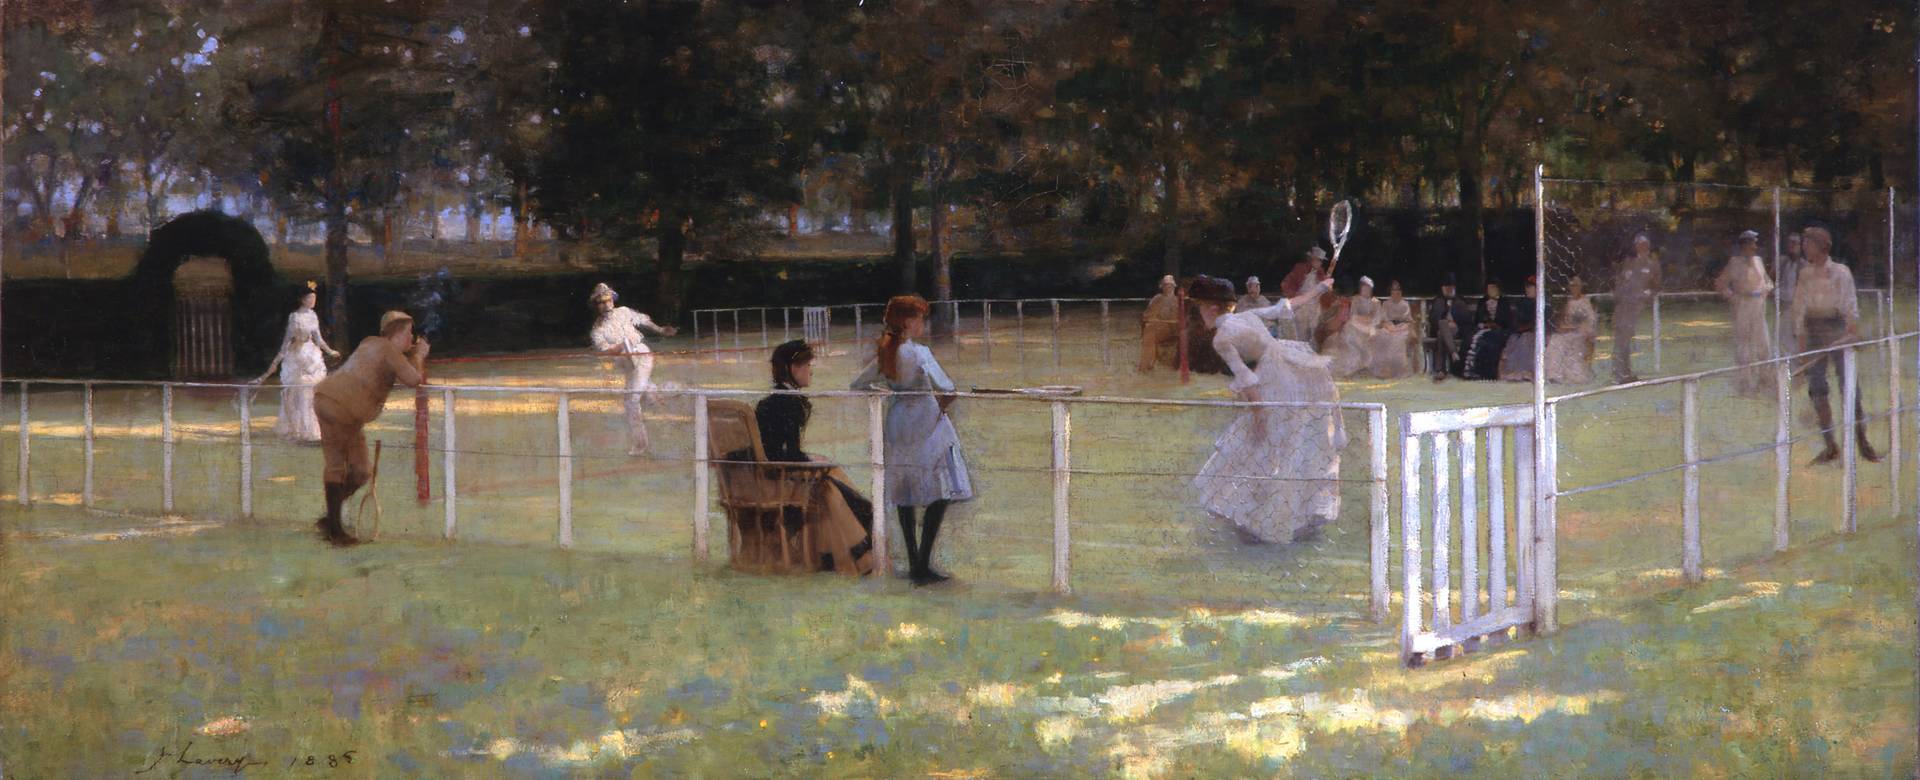 Джон Лаверти. Теннисная вечеринка. 1885